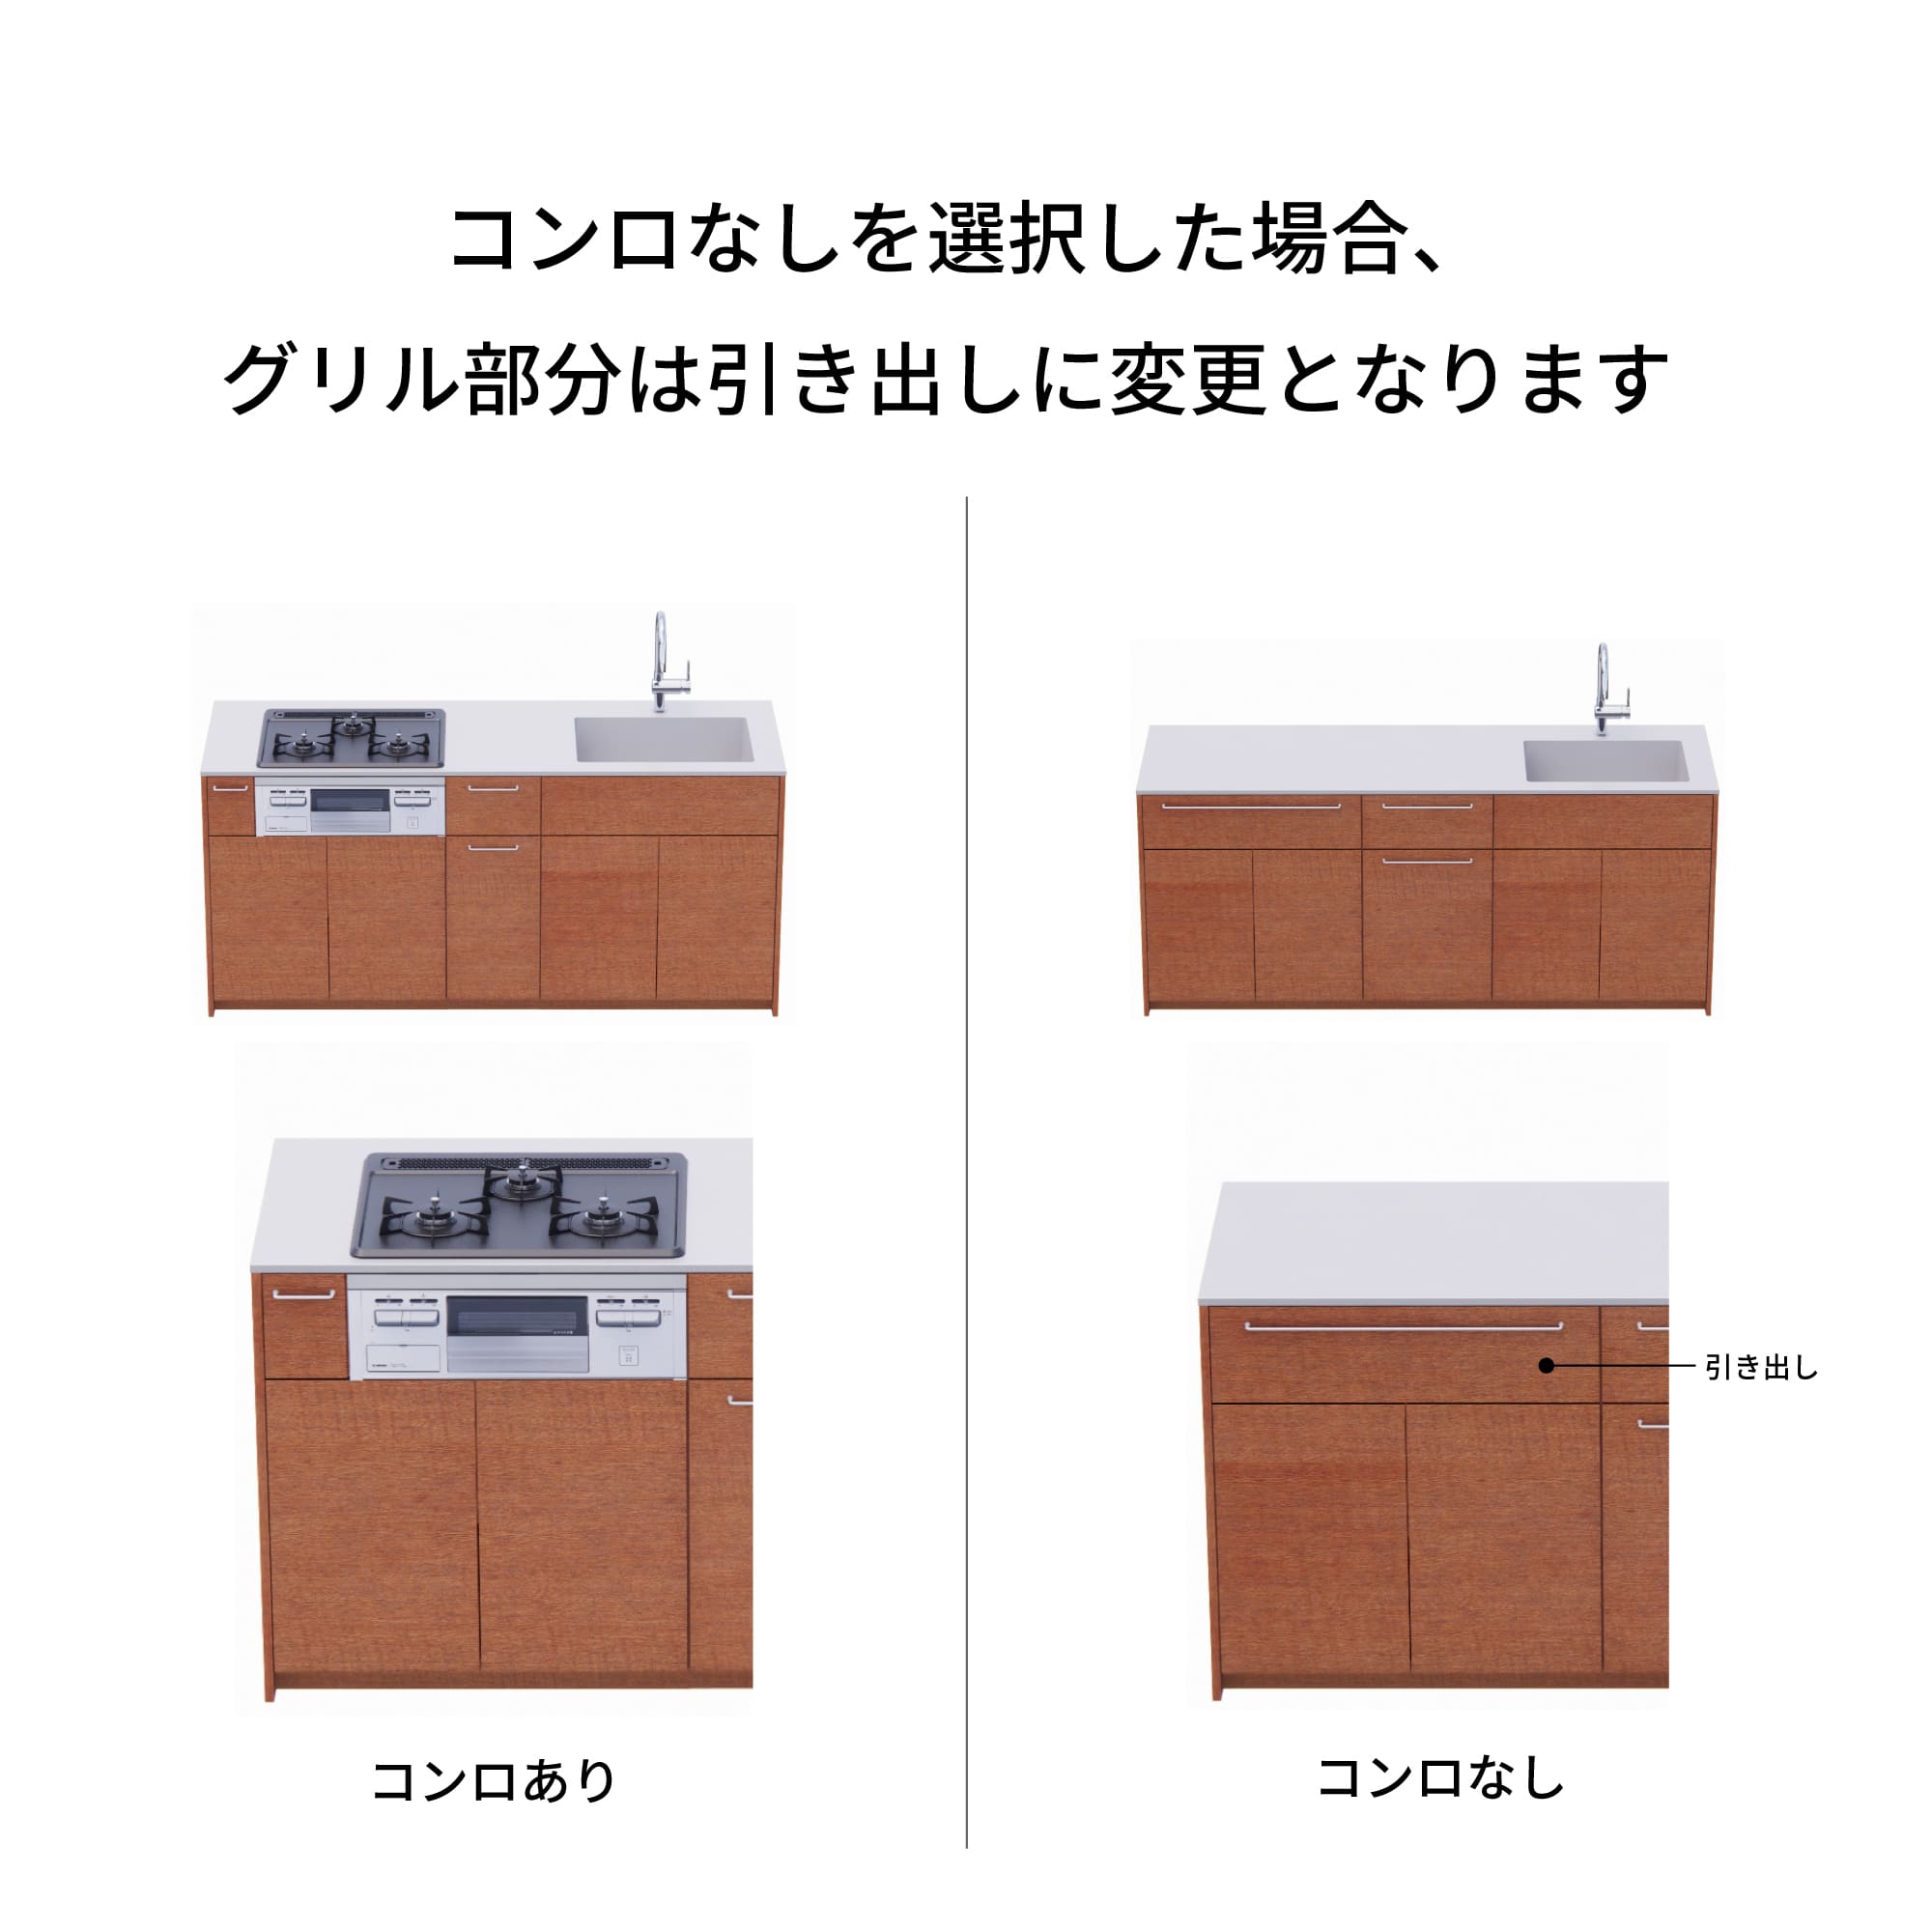 木製システムキッチン 対面型 W1840・コンロなし / オーブンなし / 食洗機なし KB-KC022-30-G183 コンロ無しの場合、通常魚焼きグリルがある部分は引き出しになっています